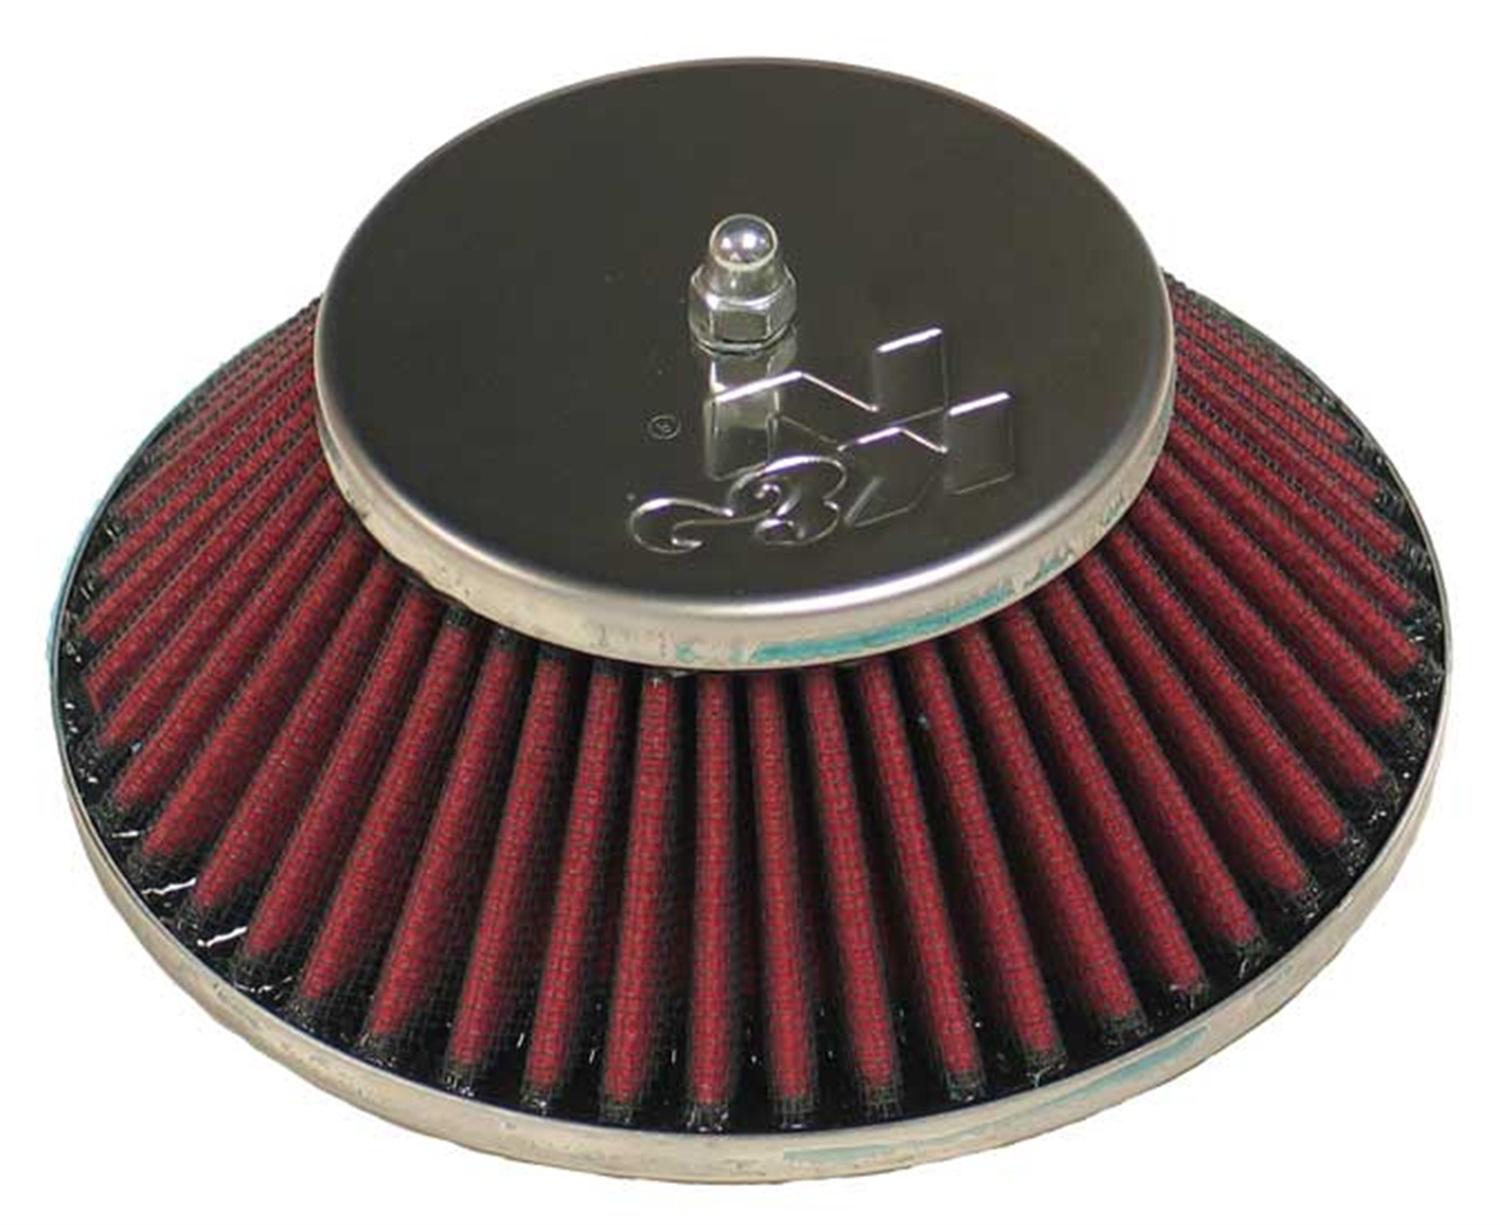 K&n filters 56-9327 racing custom air cleaner